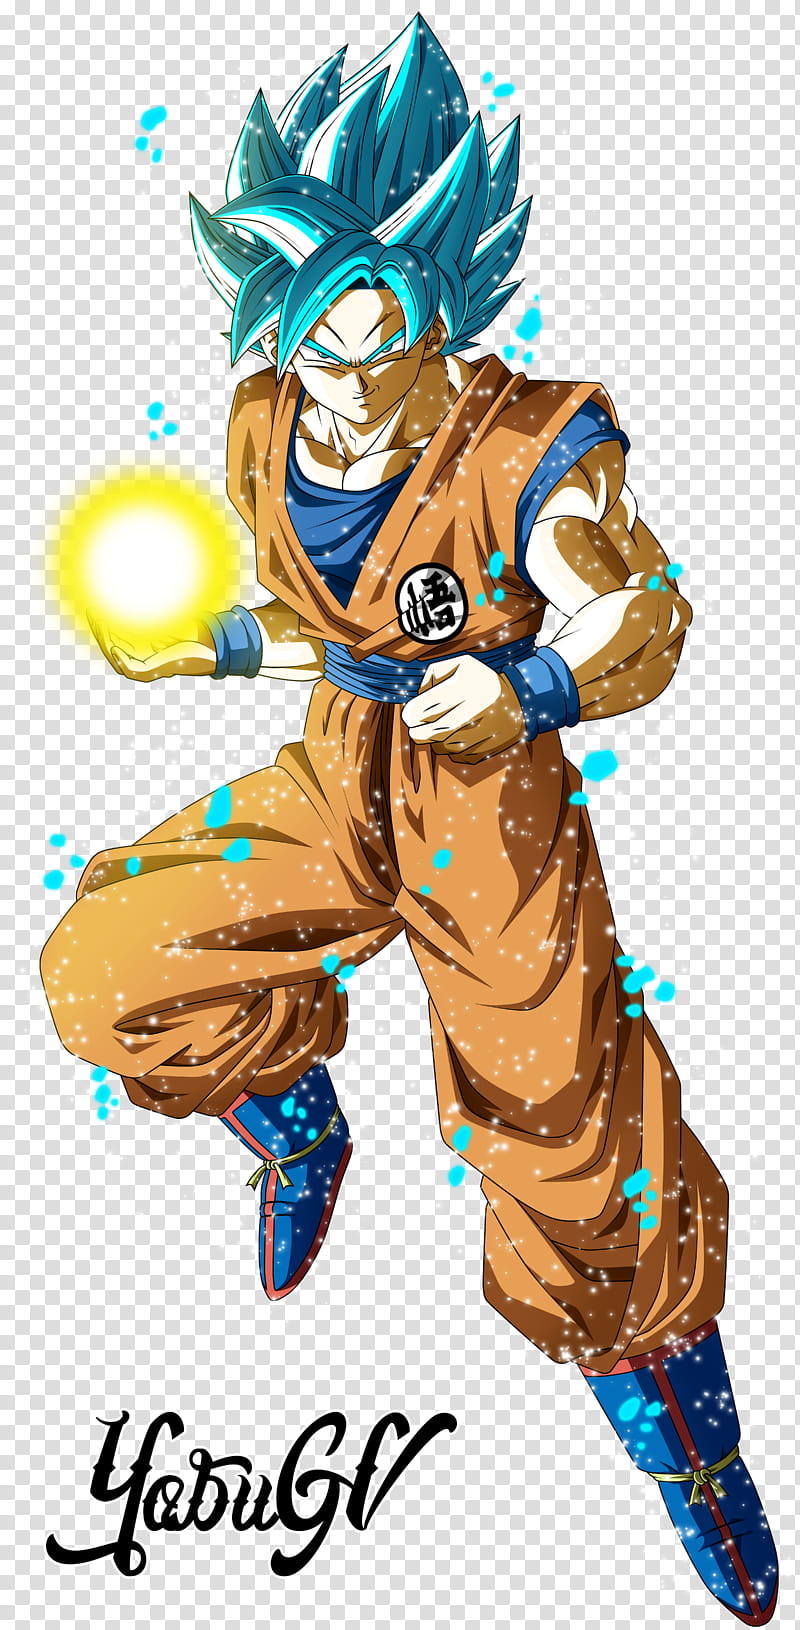 Goku Super Saiyan Blue, Son Goku transparent background PNG